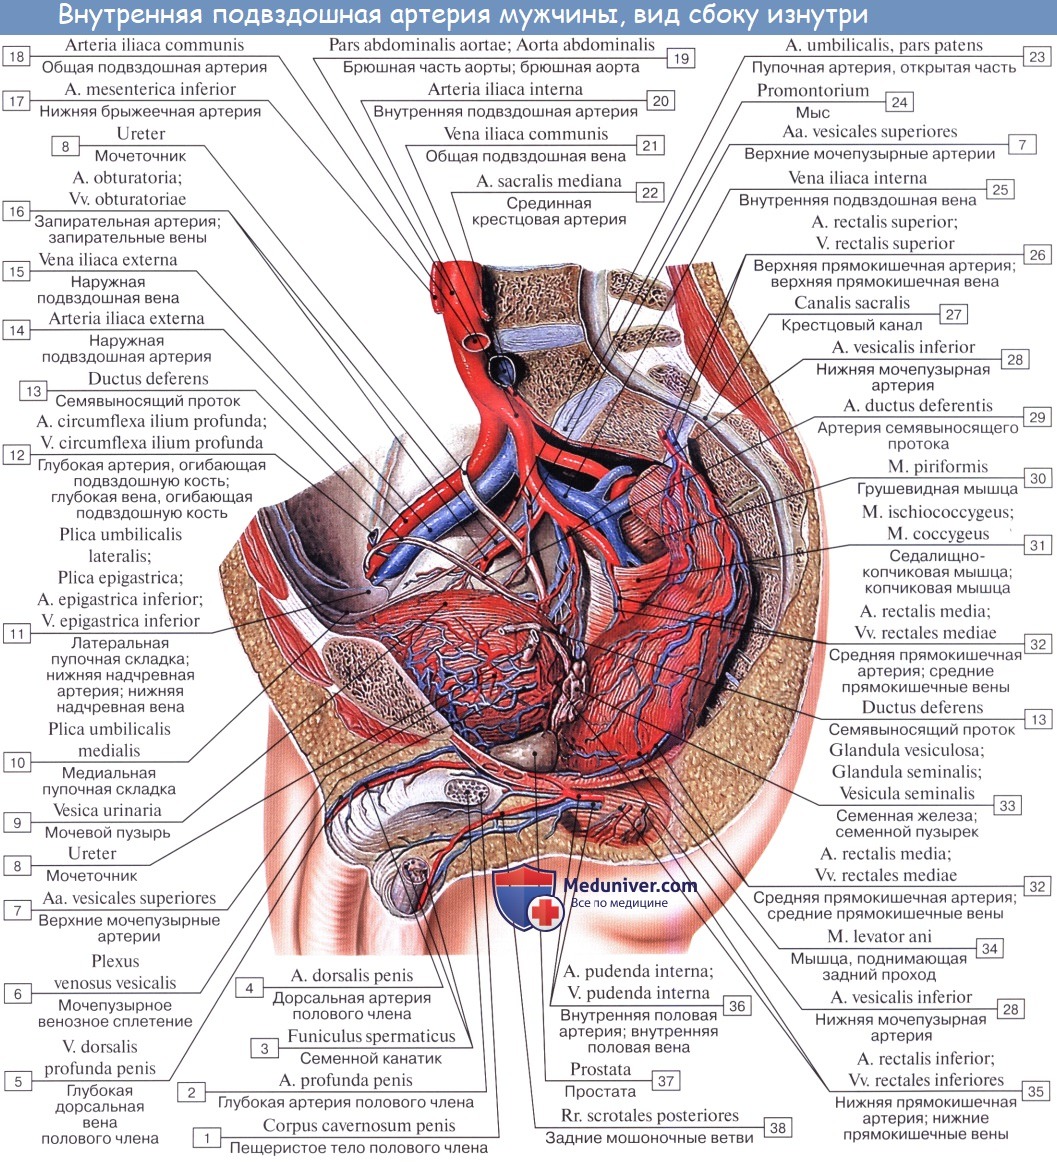 Анатомия: Наружная подвздошная артерия, a. iliaca externa. Ветви наружной подвздошной артерии